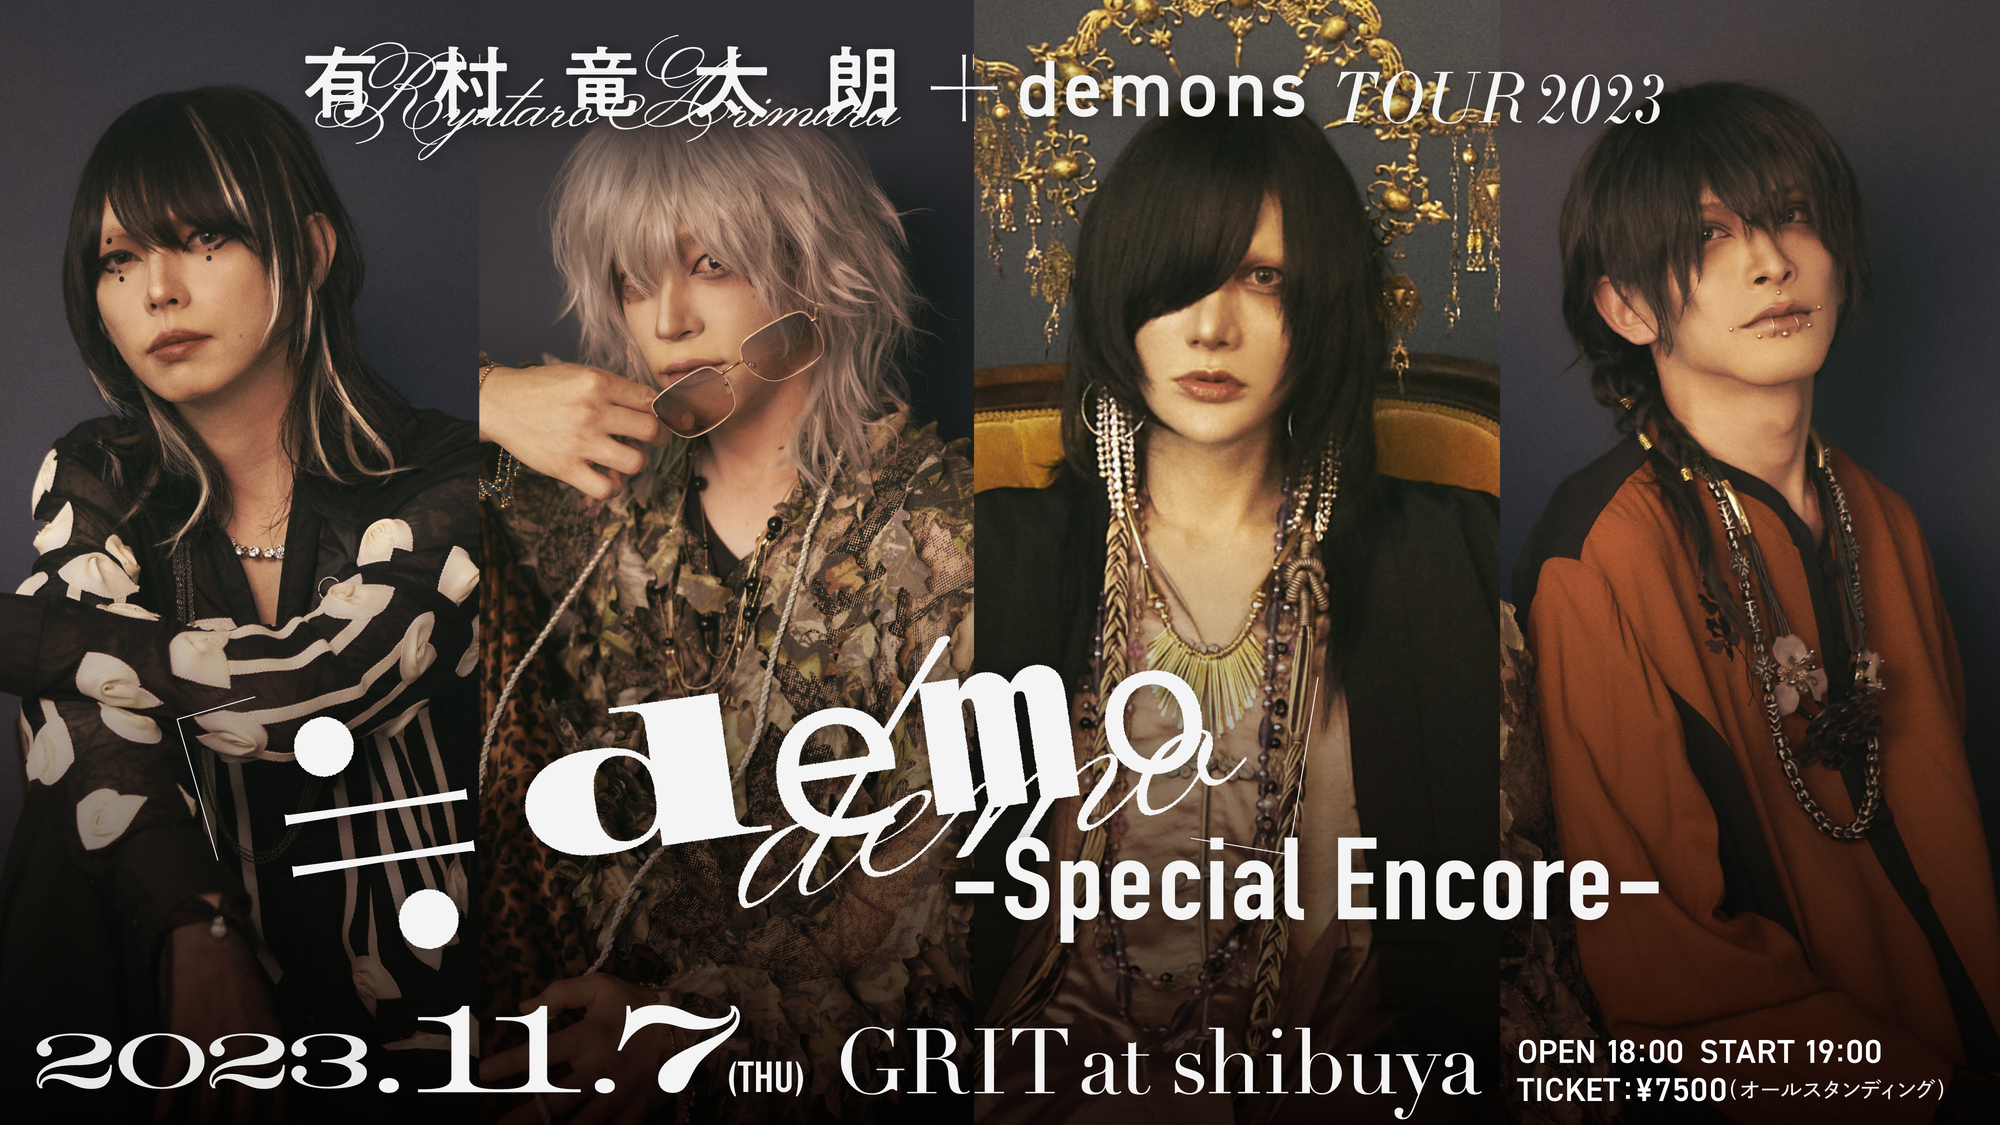 有村竜太朗 + demons TOUR2023「≒demo」-Special Encore- @GRIT at 